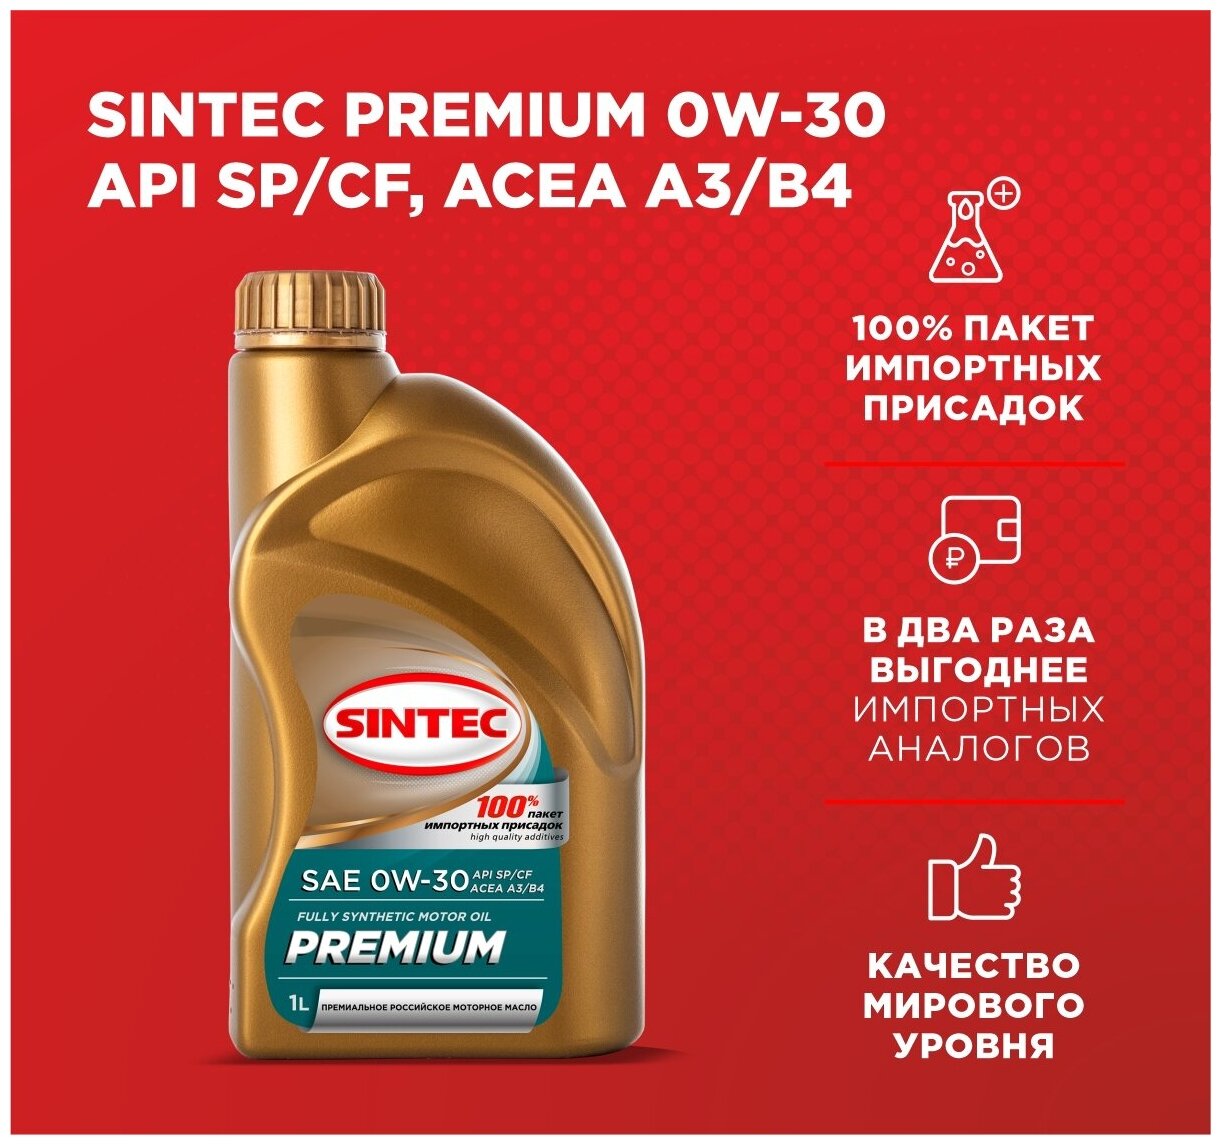 Моторное масло SINTEC PREMIUM SAE 0W-30, API SP/CF, ACEA A3/B4 Синтетическое 1 л